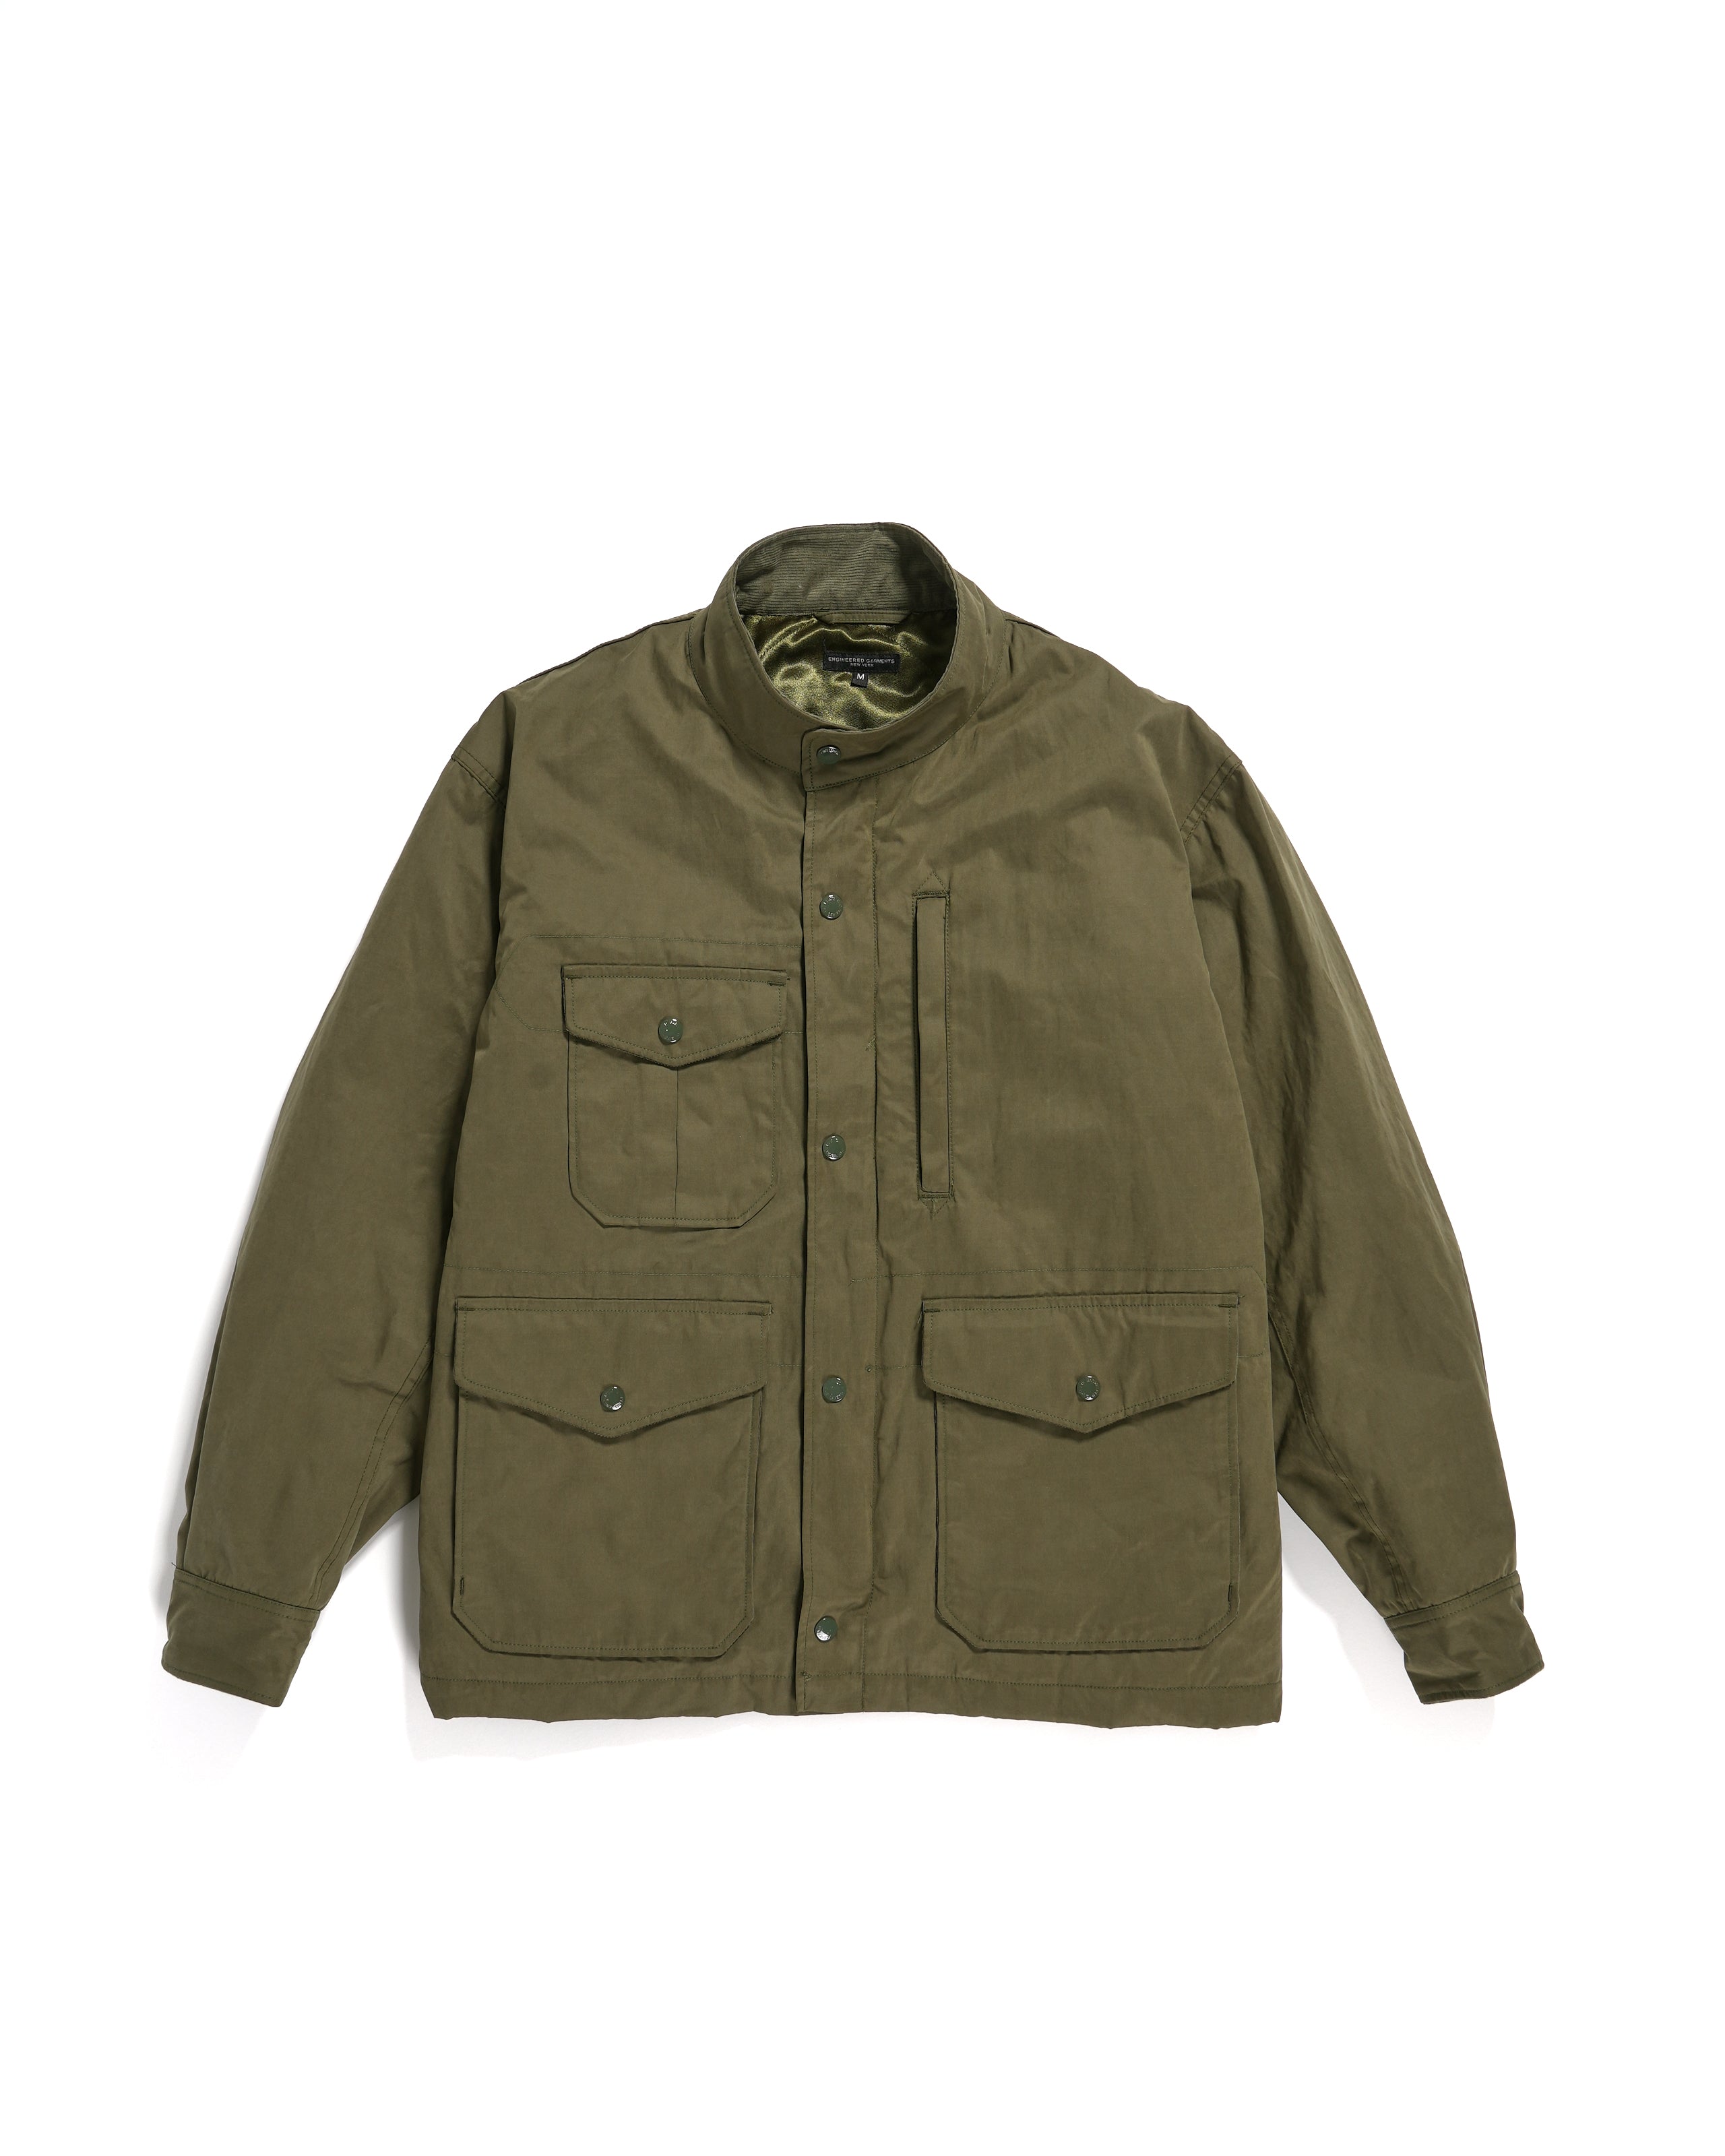 Pathfinder Jacket - Olive PC Coated Cloth